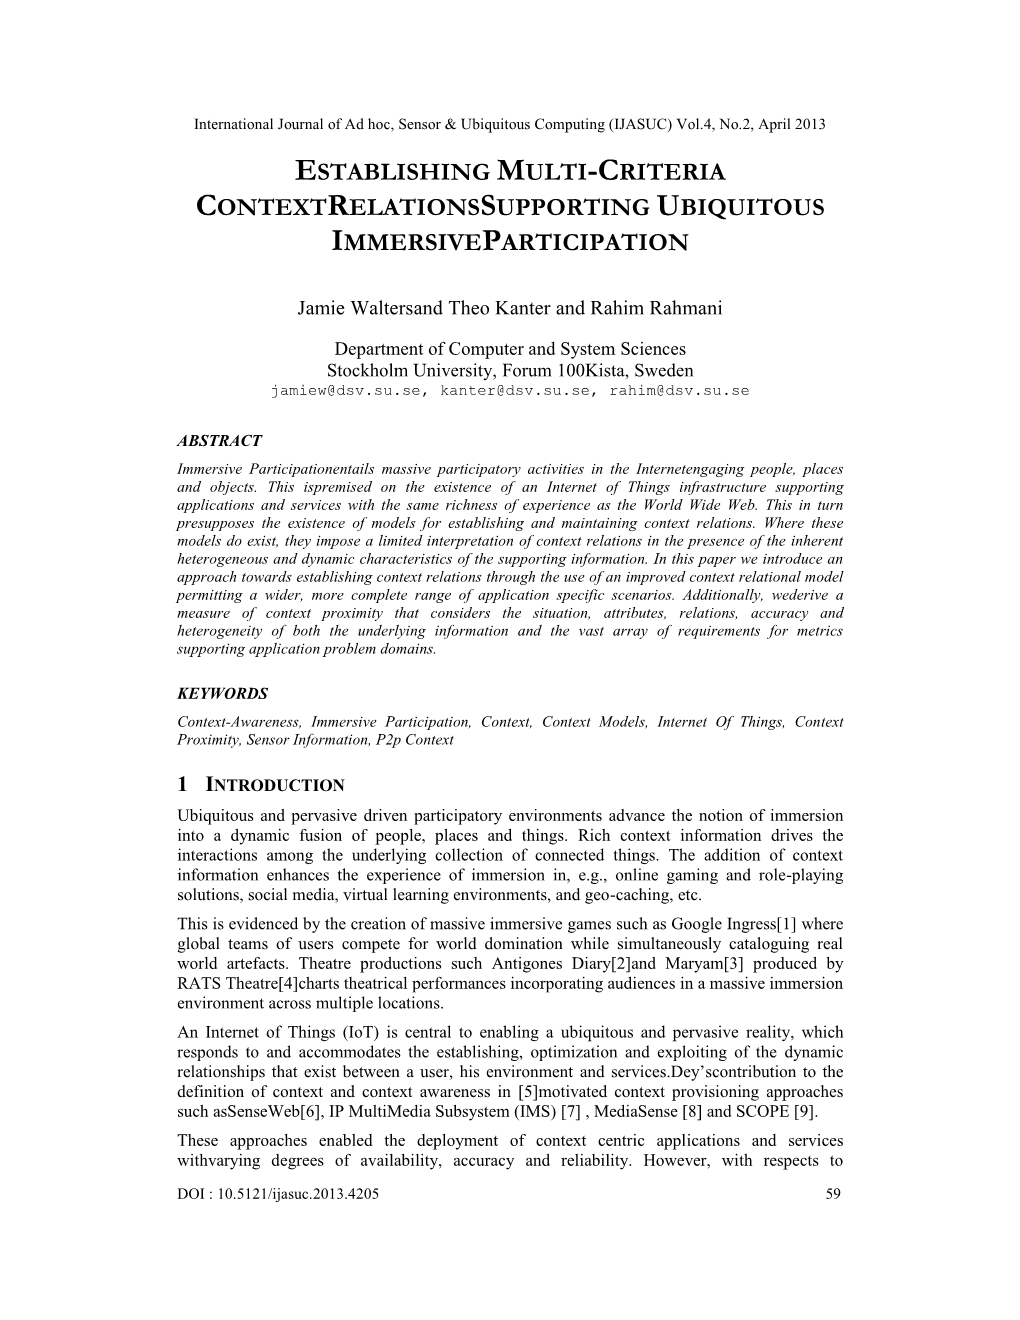 Establishing Multi-Criteria Contextrelationssupporting Ubiquitous Immersiveparticipation